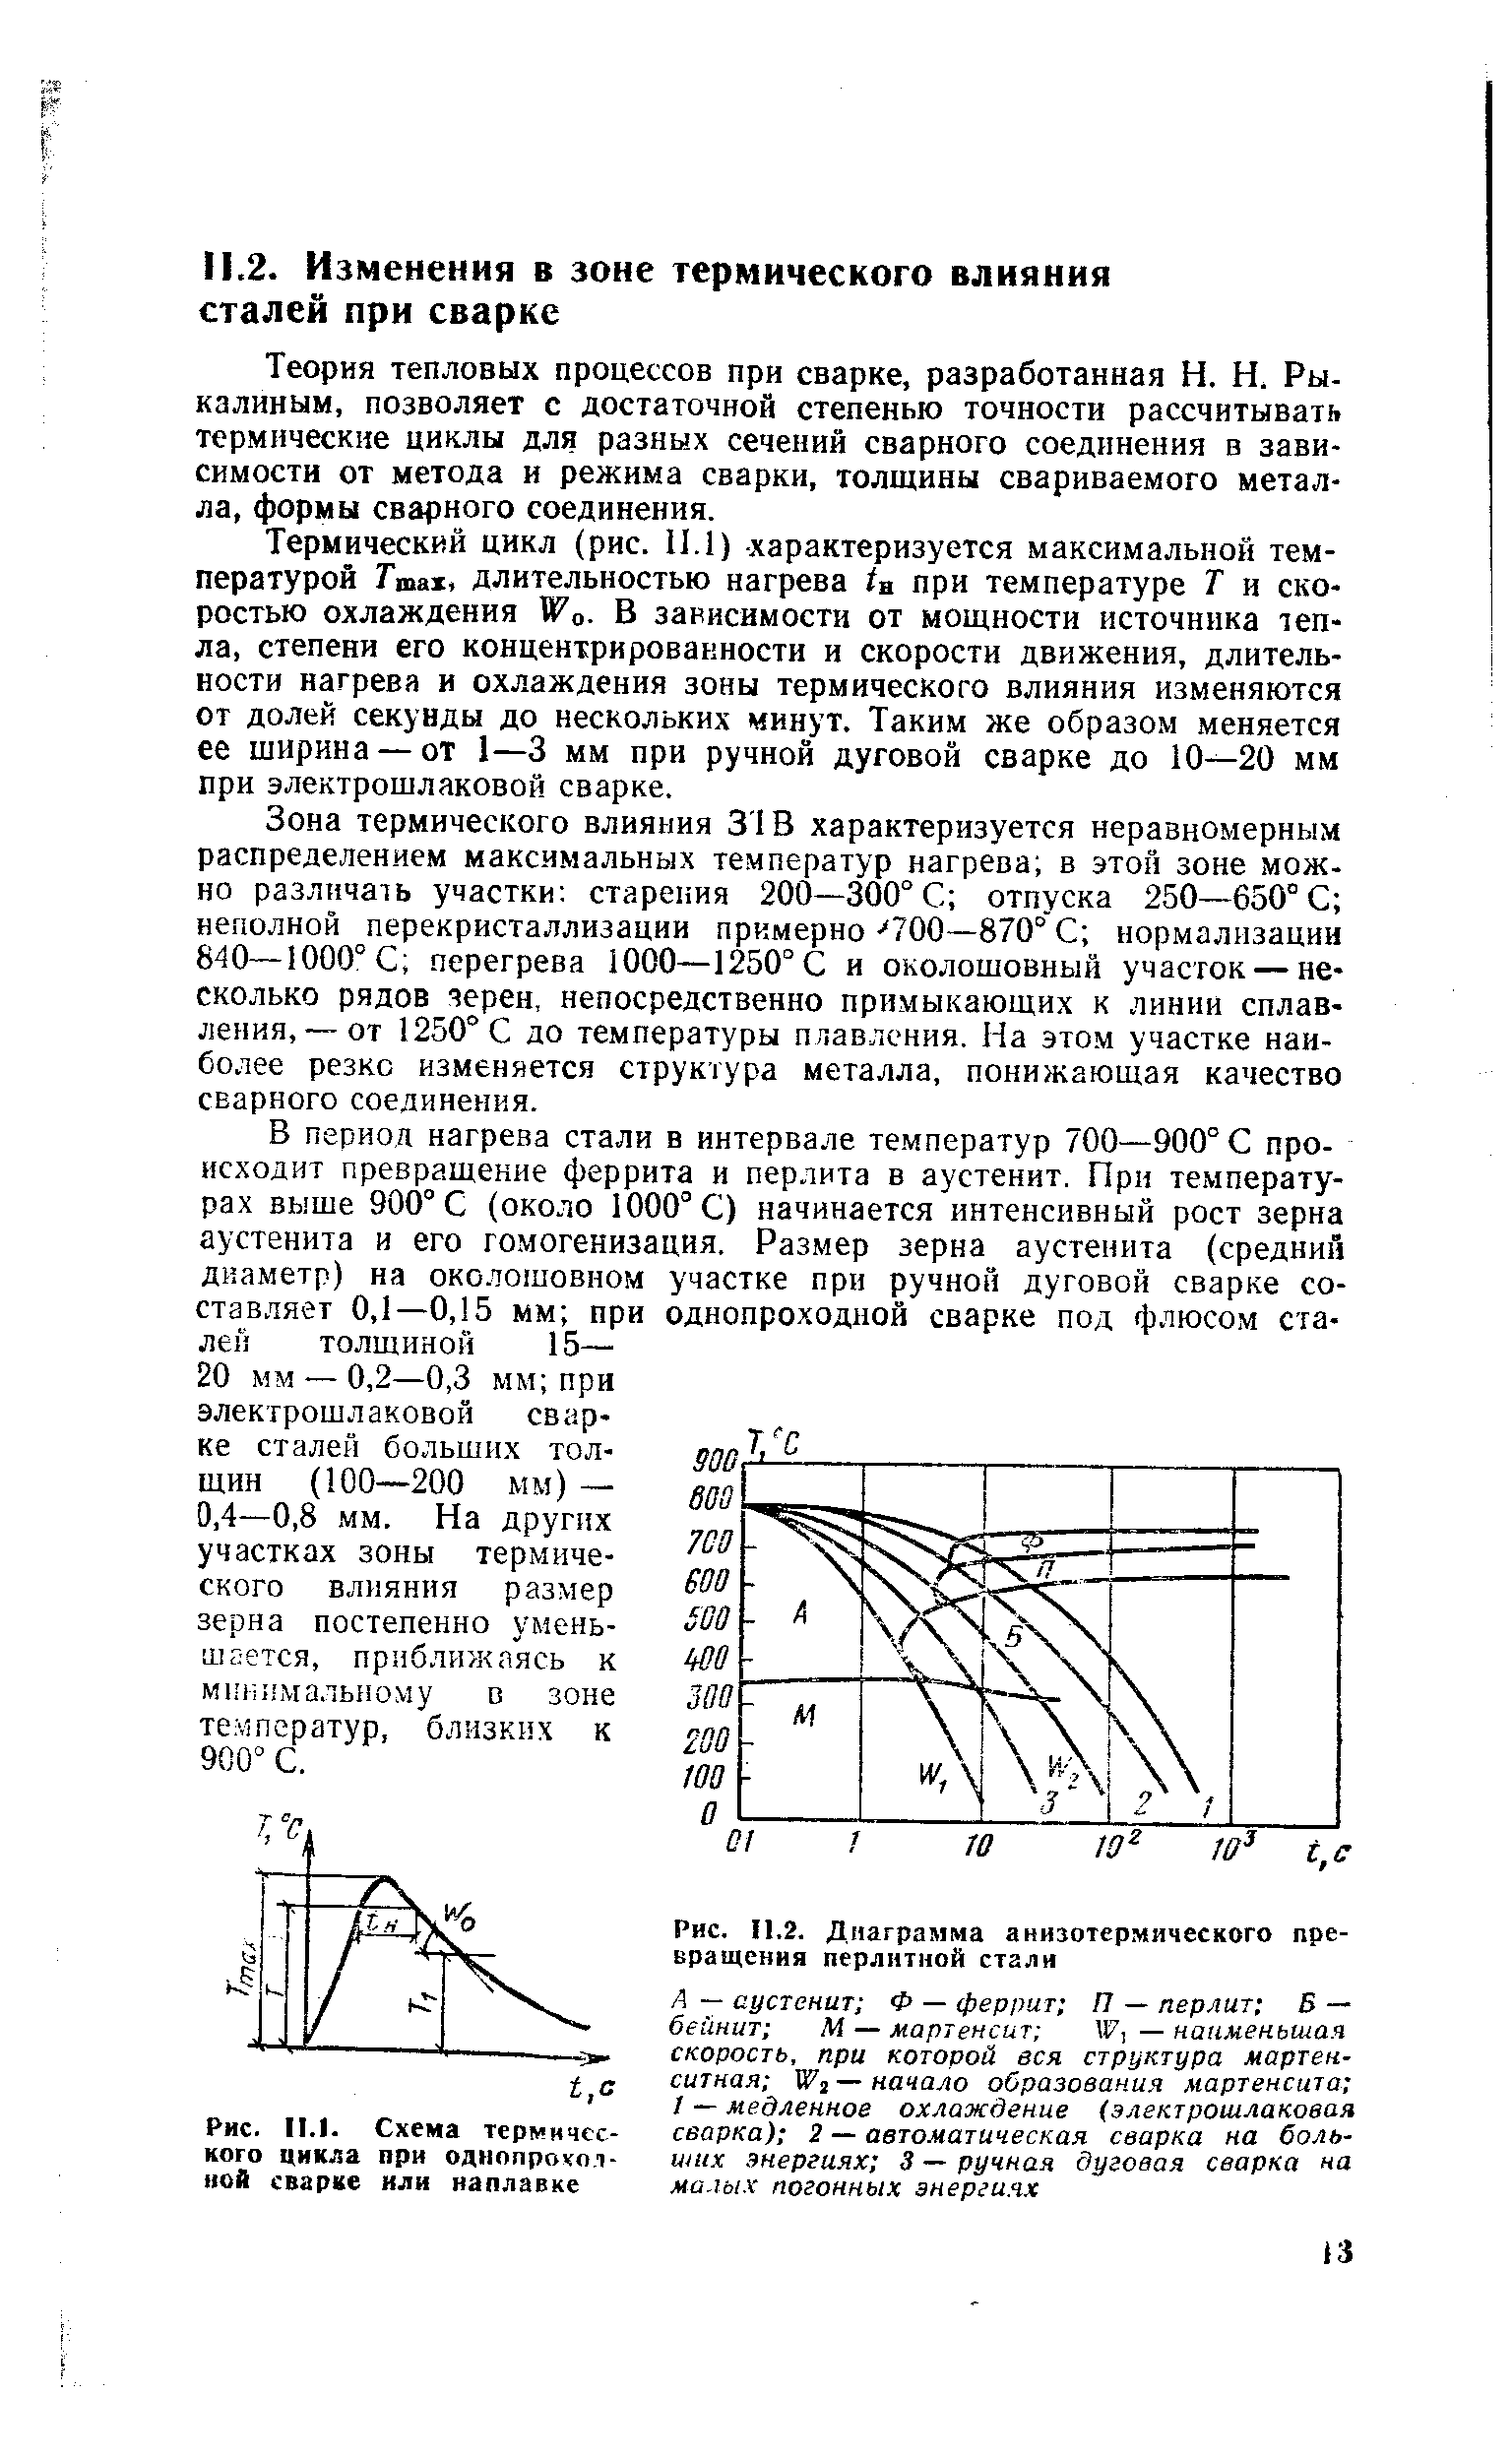 Рис. 11.2. Диаграмма анизотермического превращения перлитной стали
